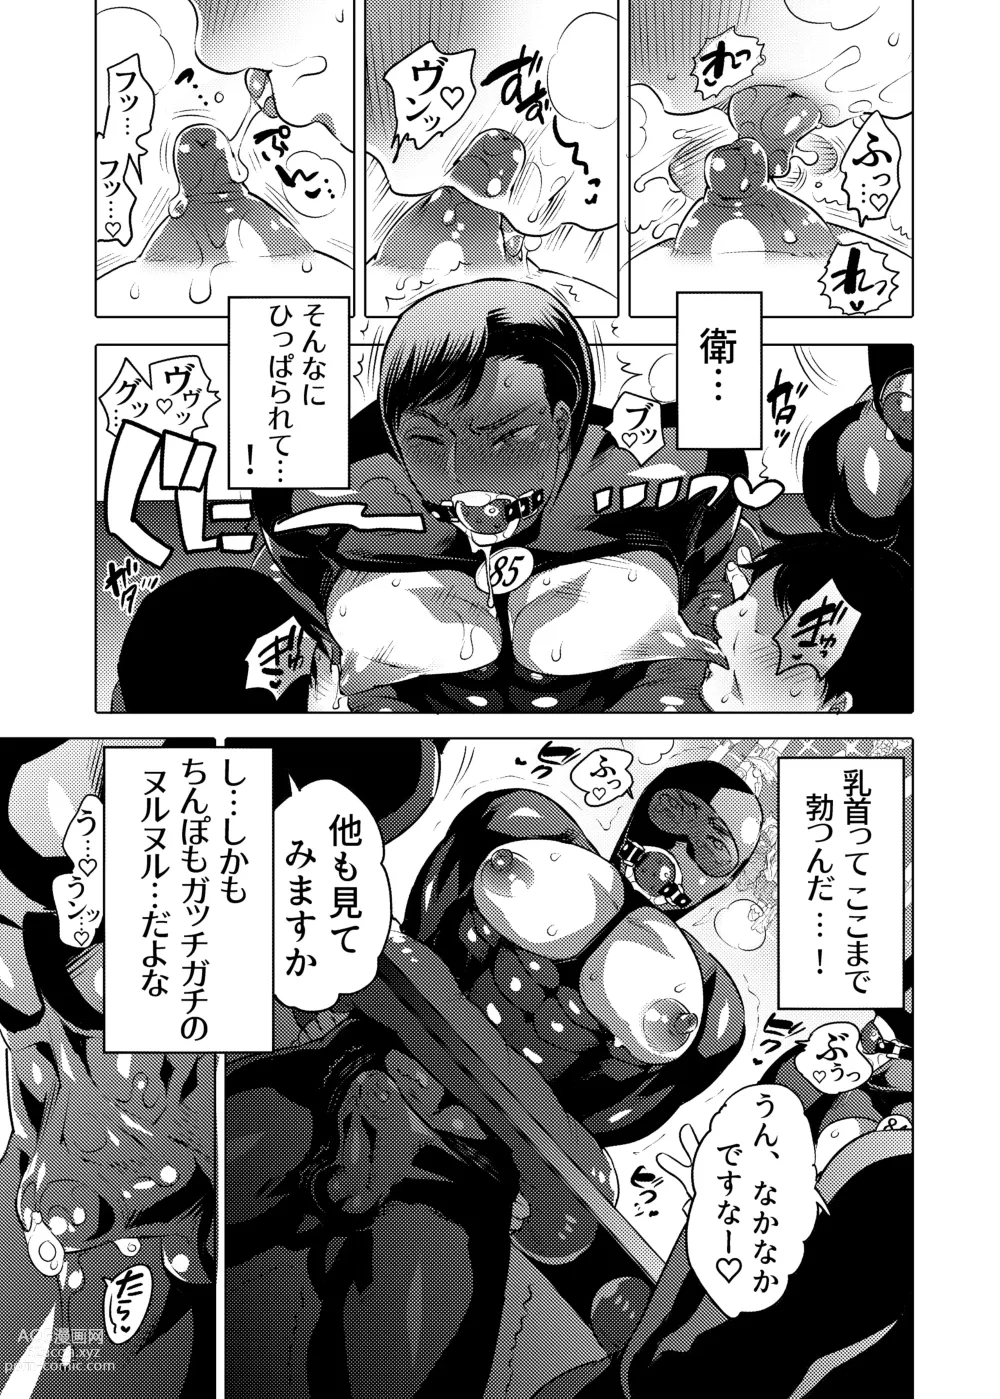 Page 9 of doujinshi Ochichi Hinpyoukai